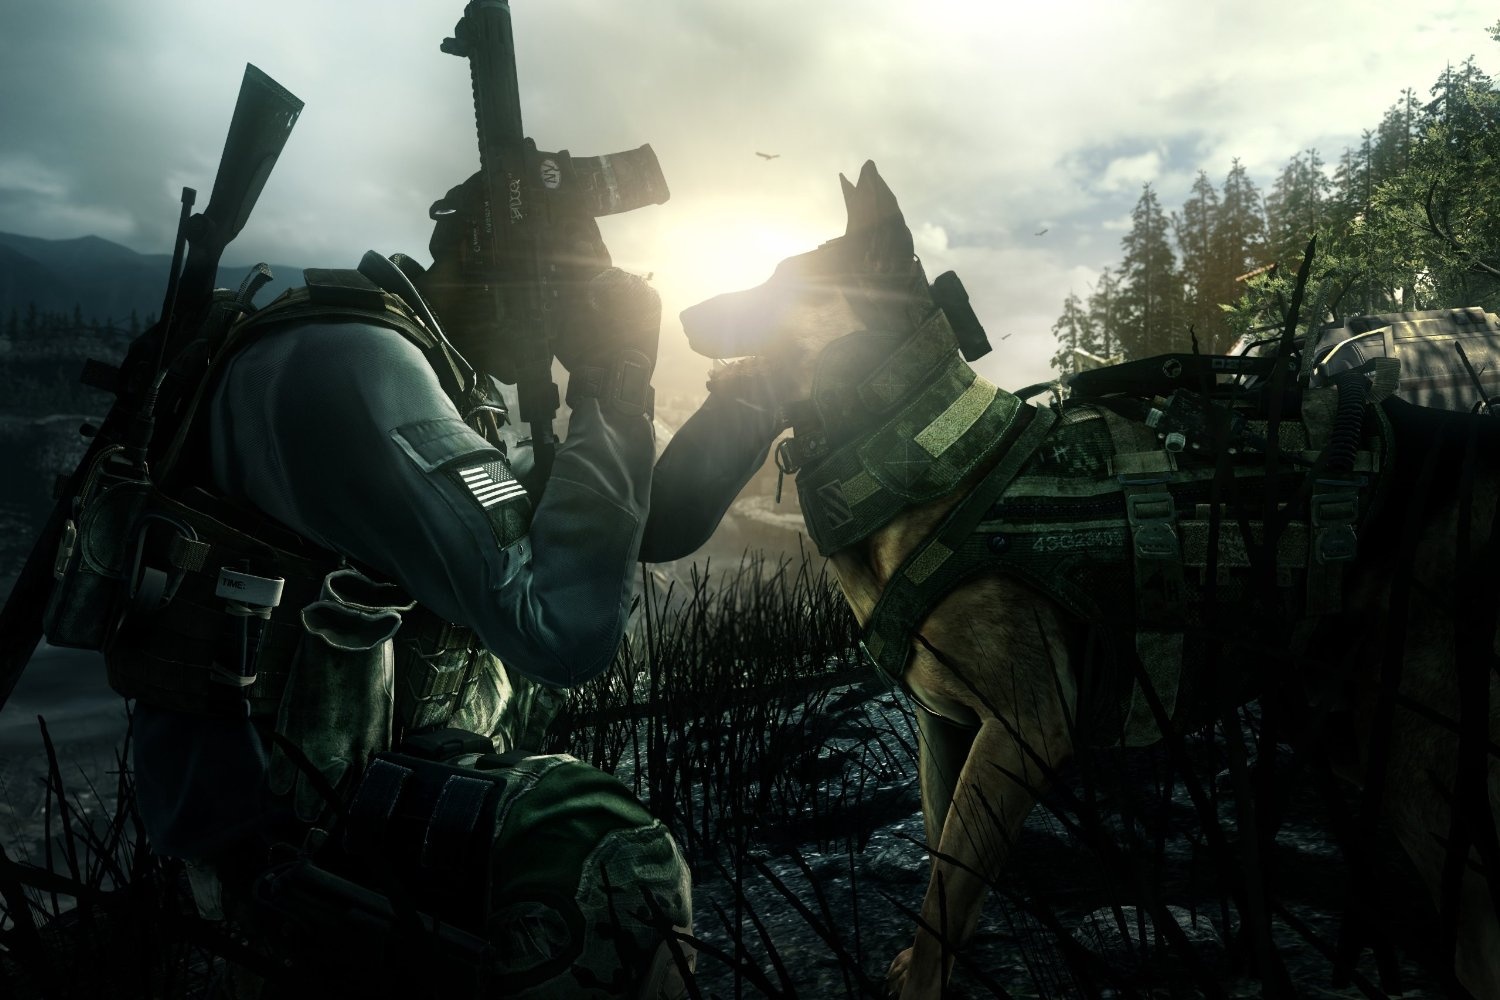 Bild von Call of Duty: Ghosts (PEGI) (PS3)